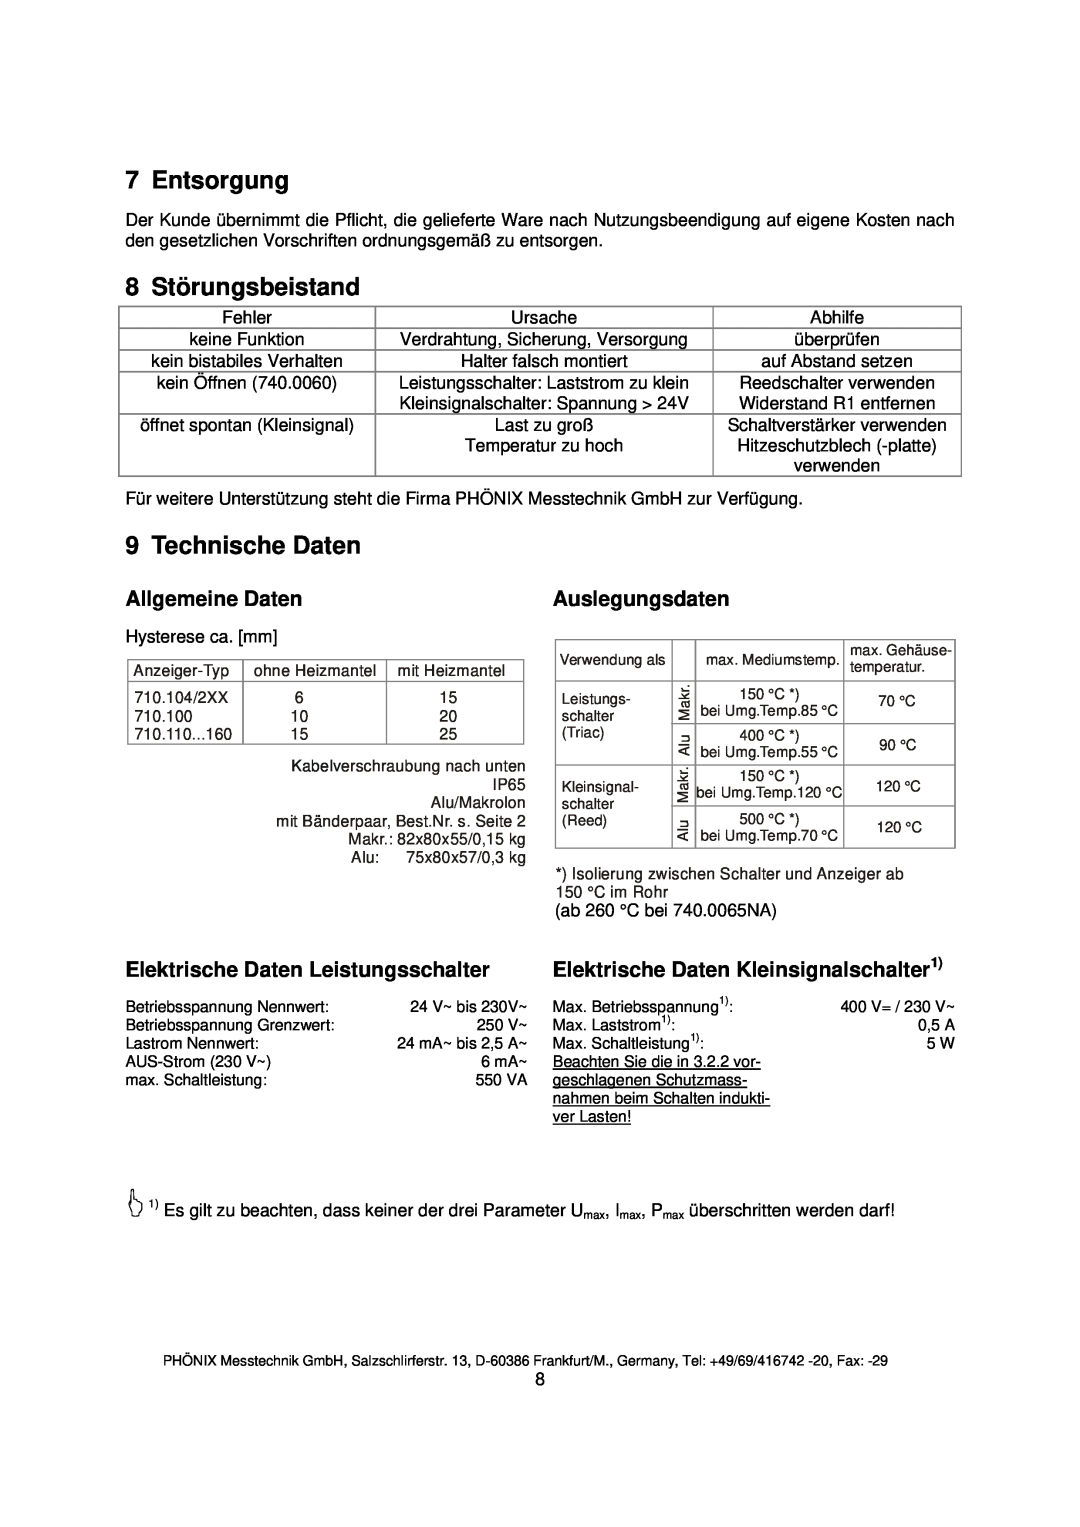 Euphonix 740.0065NA instruction manual Entsorgung, 8 Störungsbeistand, Technische Daten, Allgemeine Daten, Auslegungsdaten 